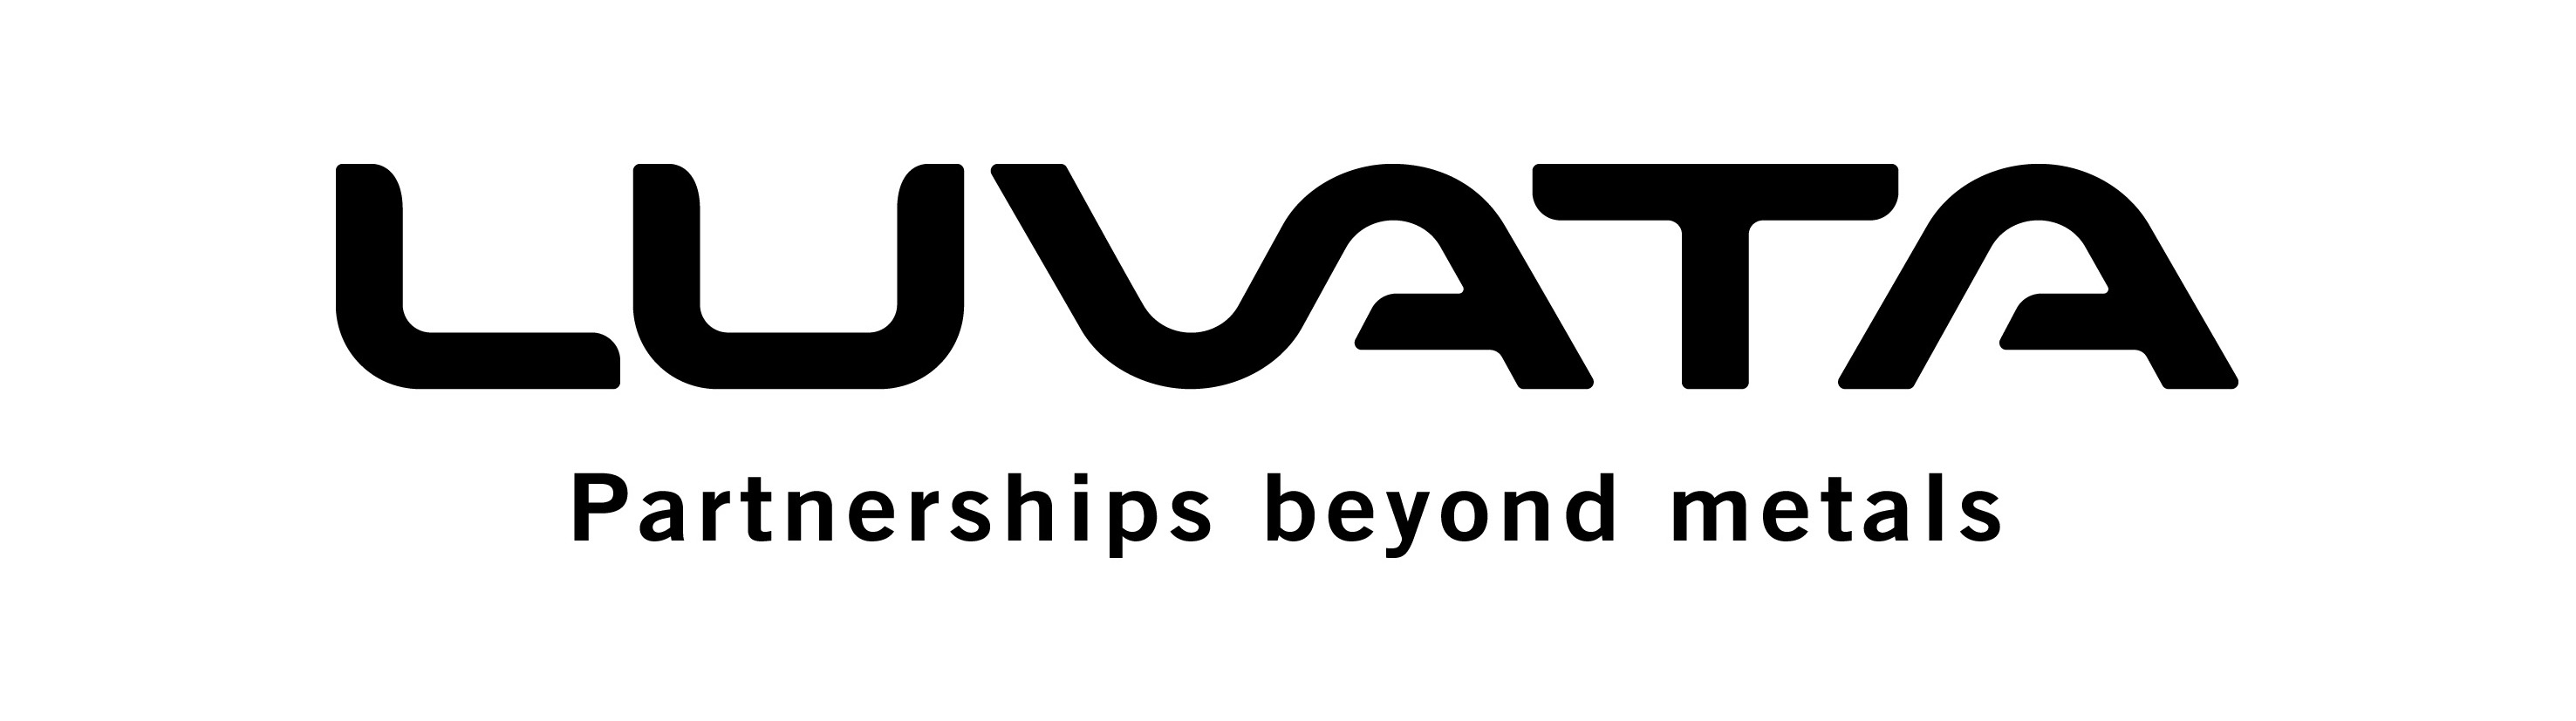 Luvata Logo photo - 1